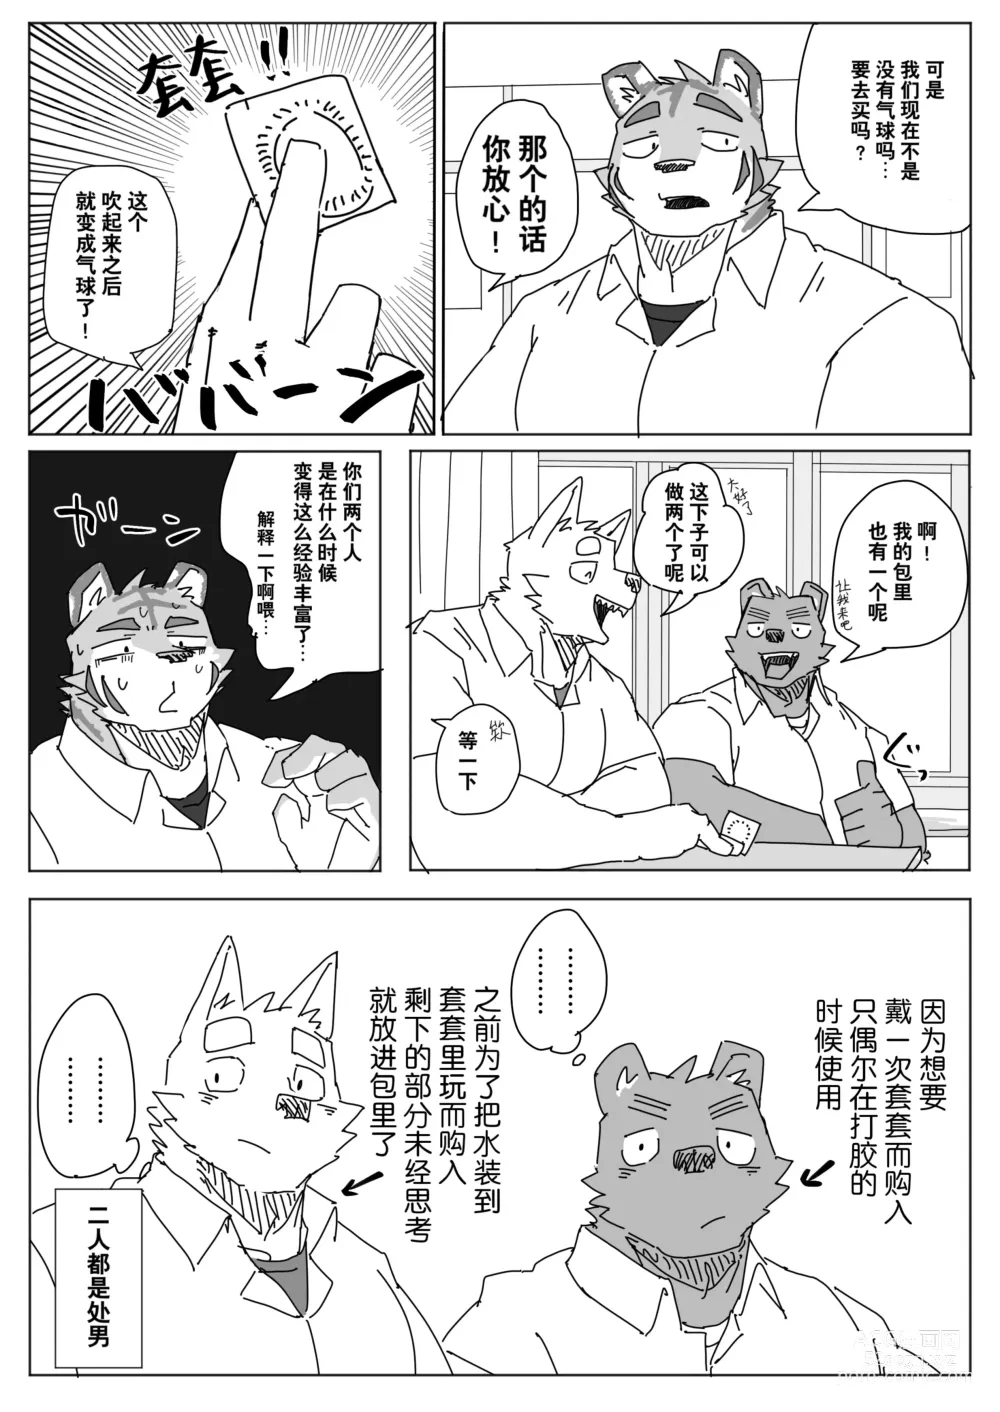 Page 2 of manga 放学后的游戏+后续